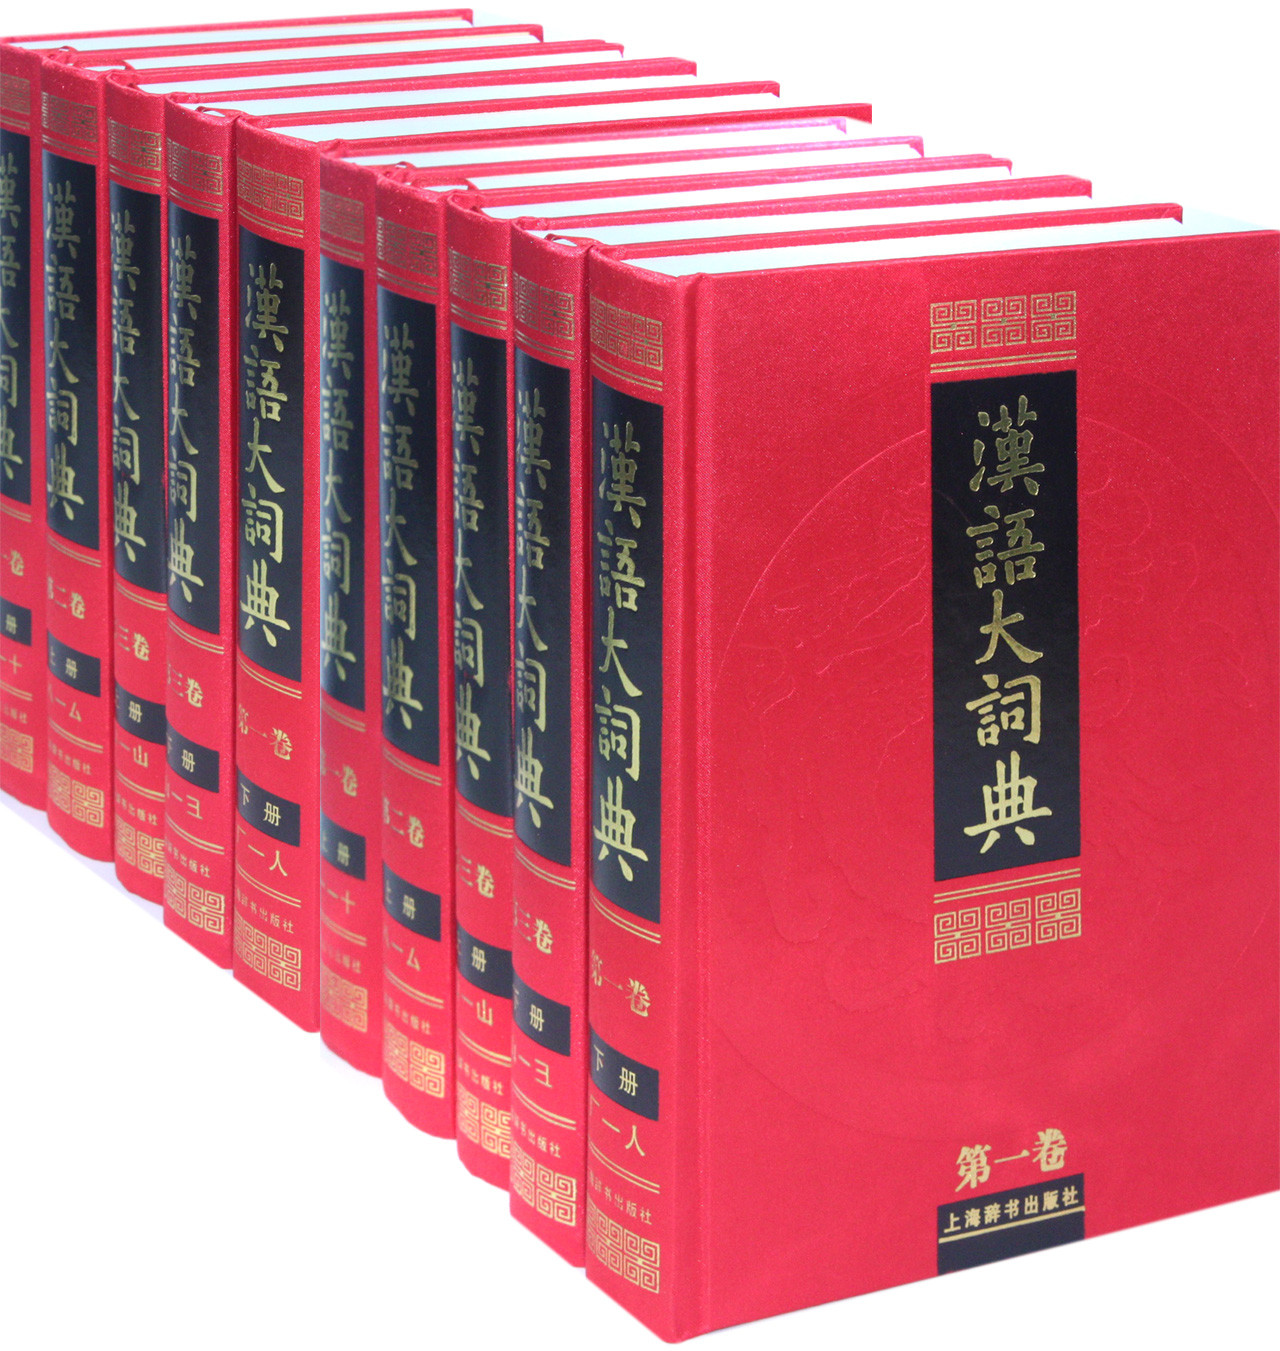 汉语大词典(全23册)|一淘网优惠购|购就省钱